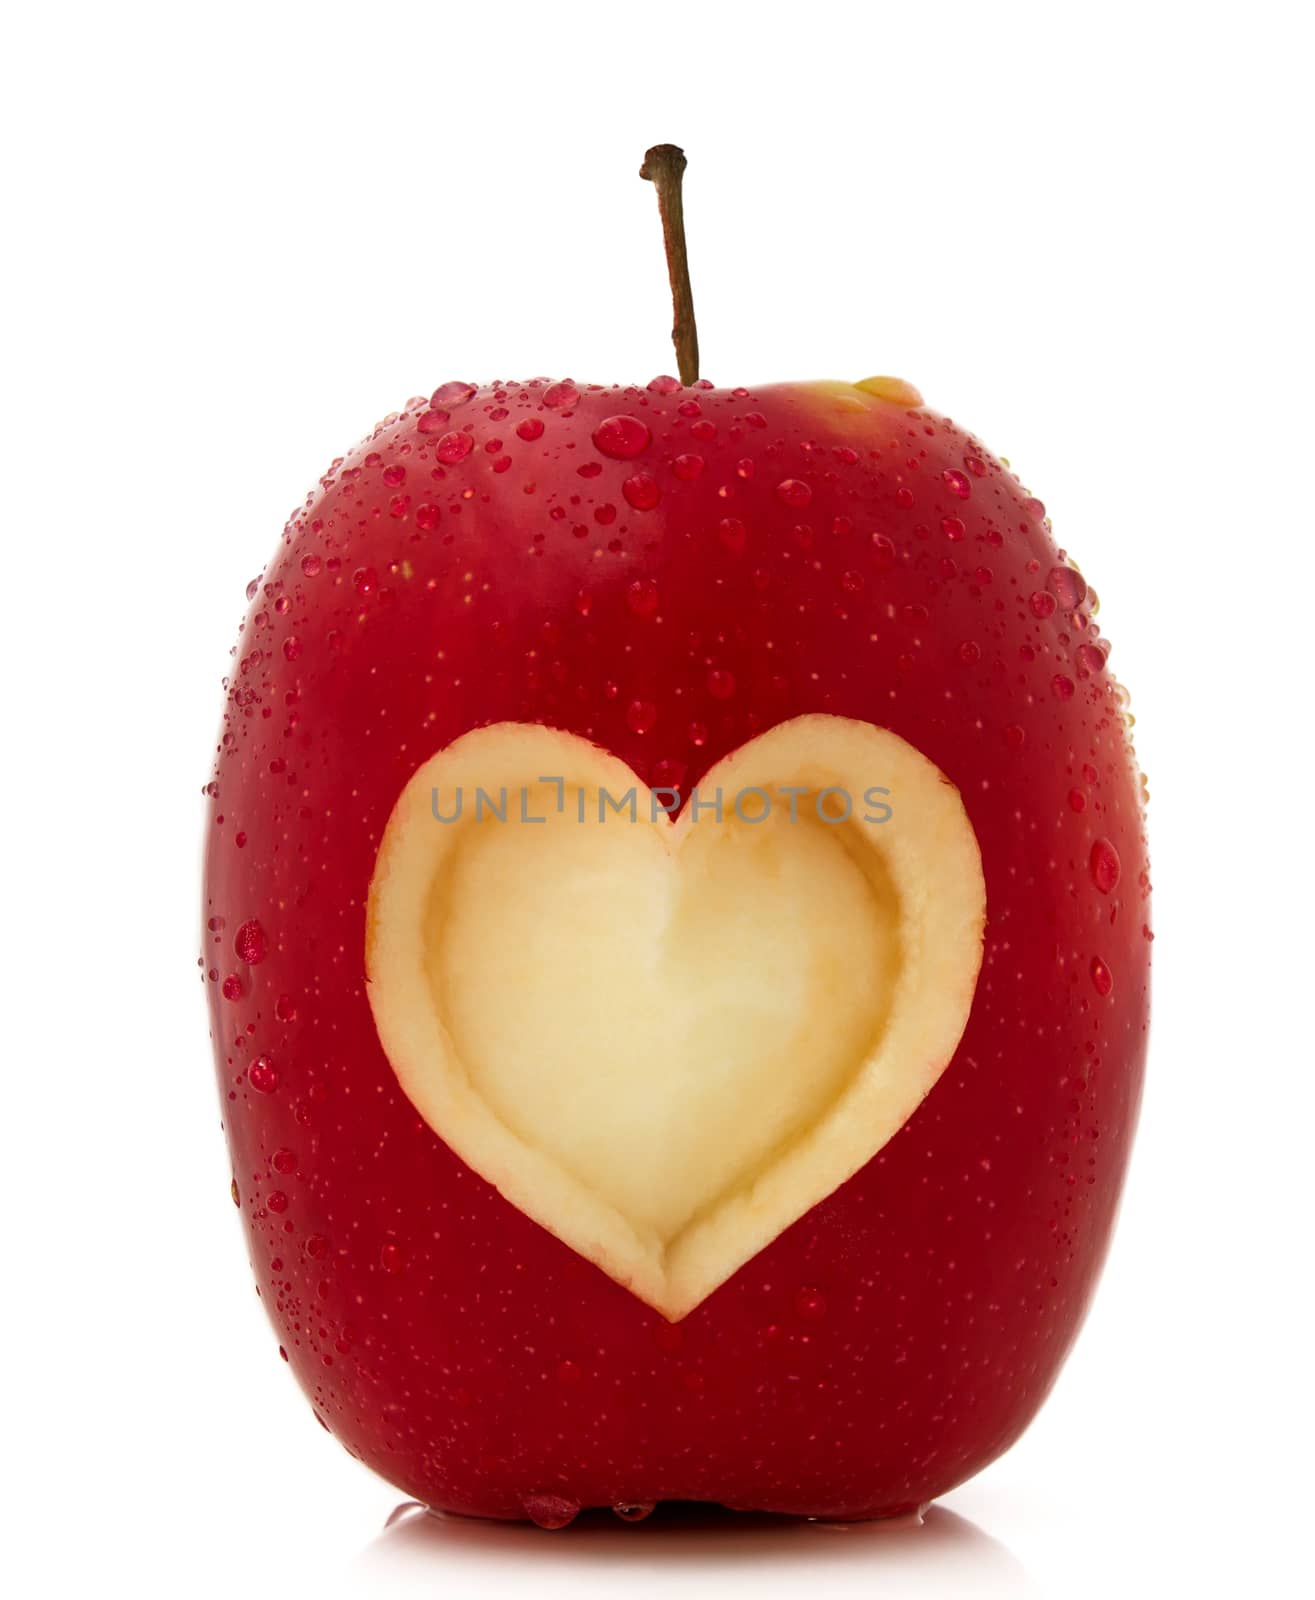 Apple with heart shape by Venakr